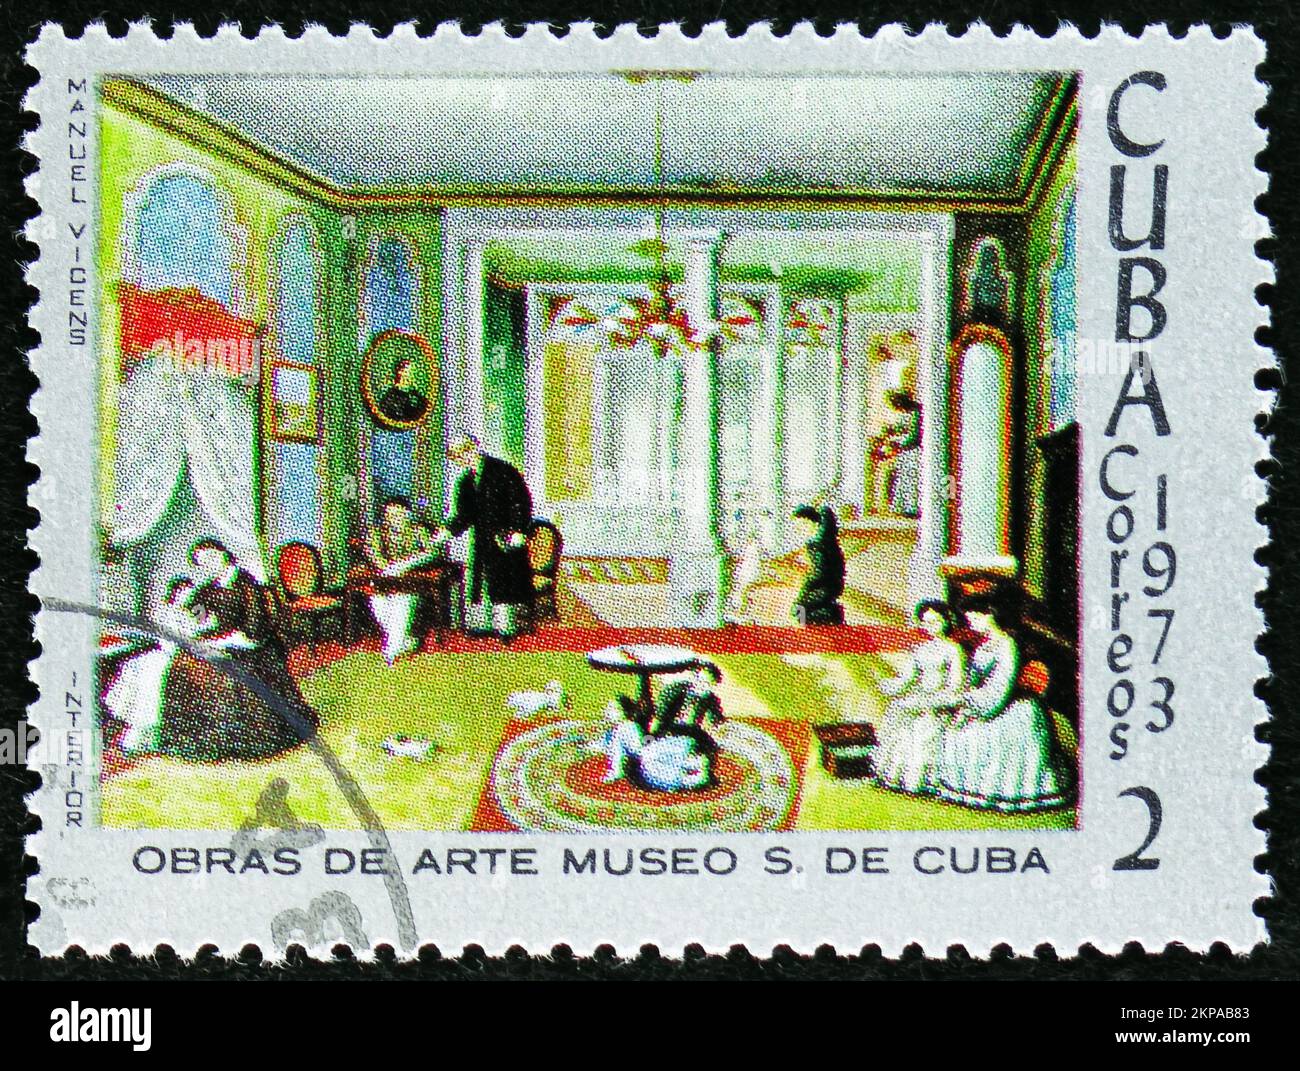 MOSCOU, RUSSIE - 29 OCTOBRE 2022 : le timbre-poste imprimé à Cuba montre Manuel Vicns, série du Musée Santiago de Cuba, vers 1973 Banque D'Images